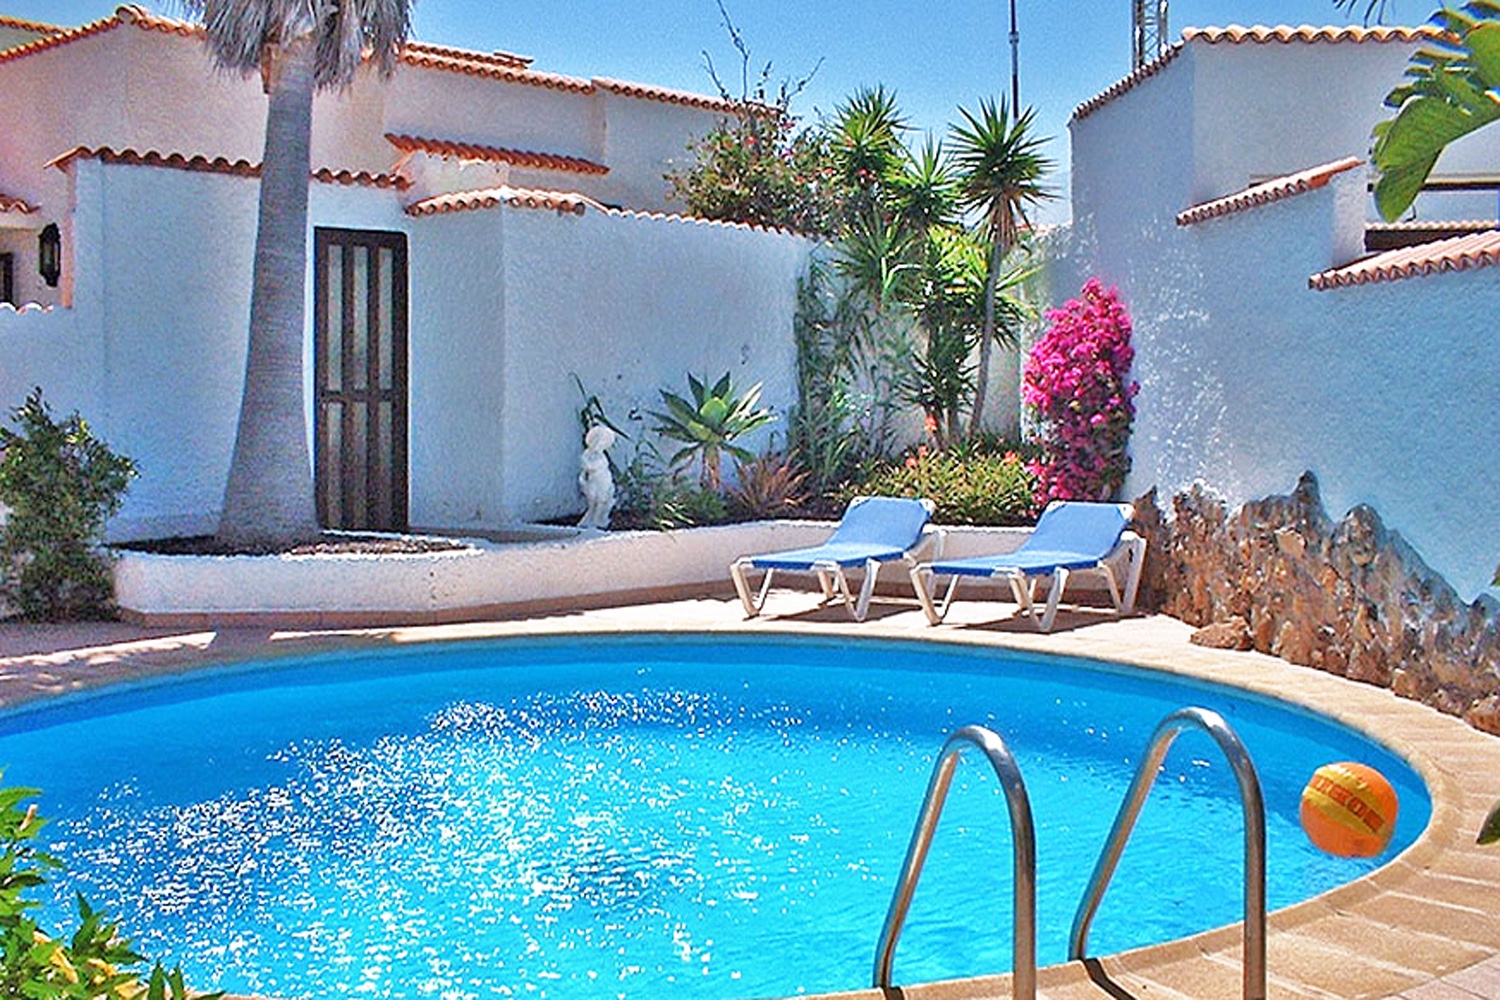 Talo vuokrattavana Teneriffan eteläosassa yksityisellä uima-altaalla lähellä Porís de Abonan rantaa.